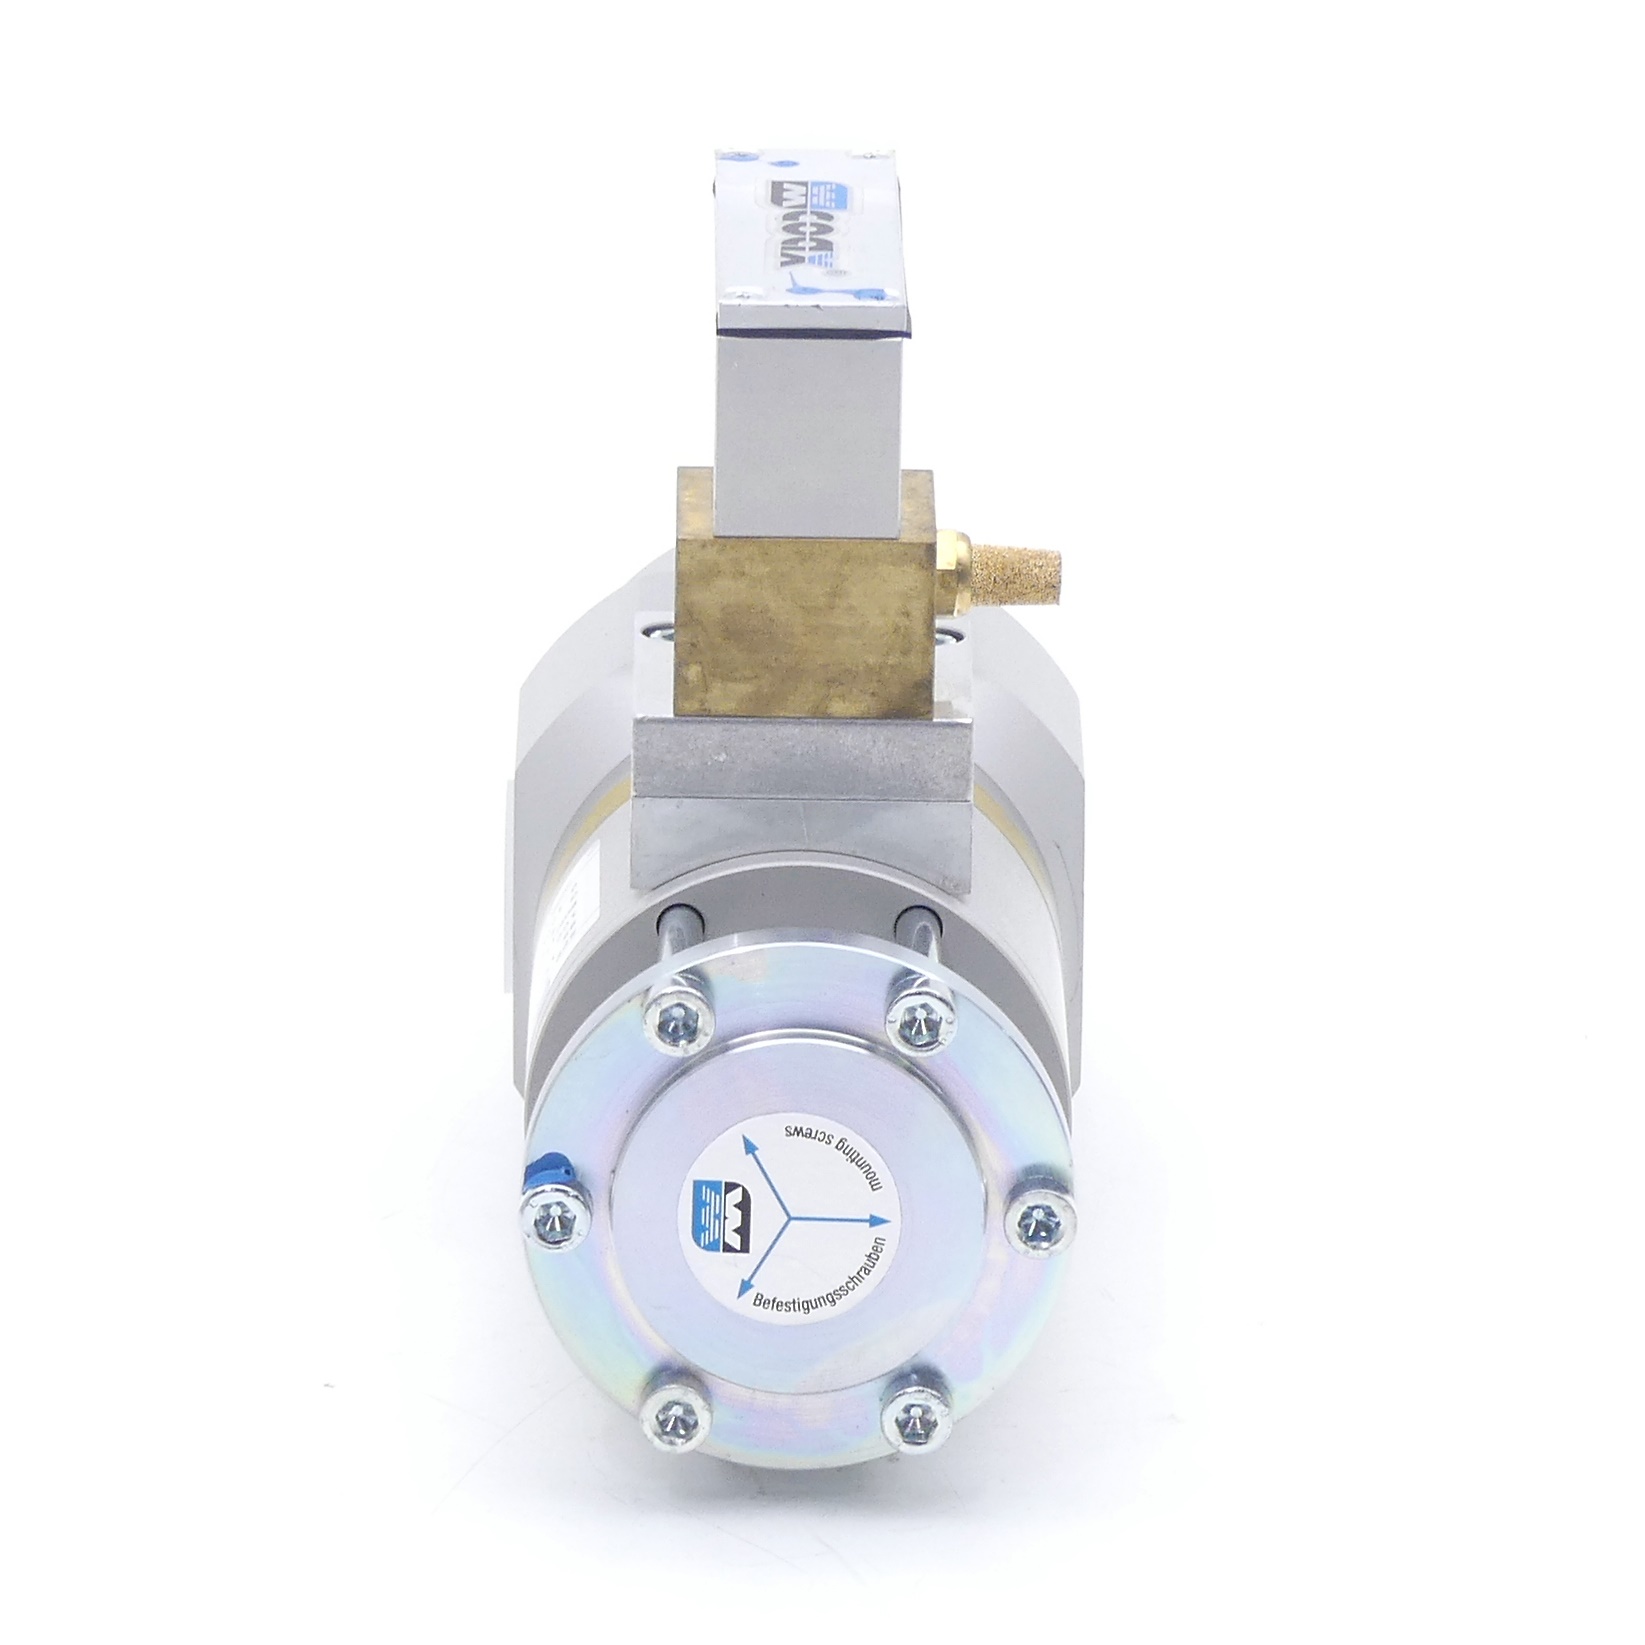 Pressure control valve 